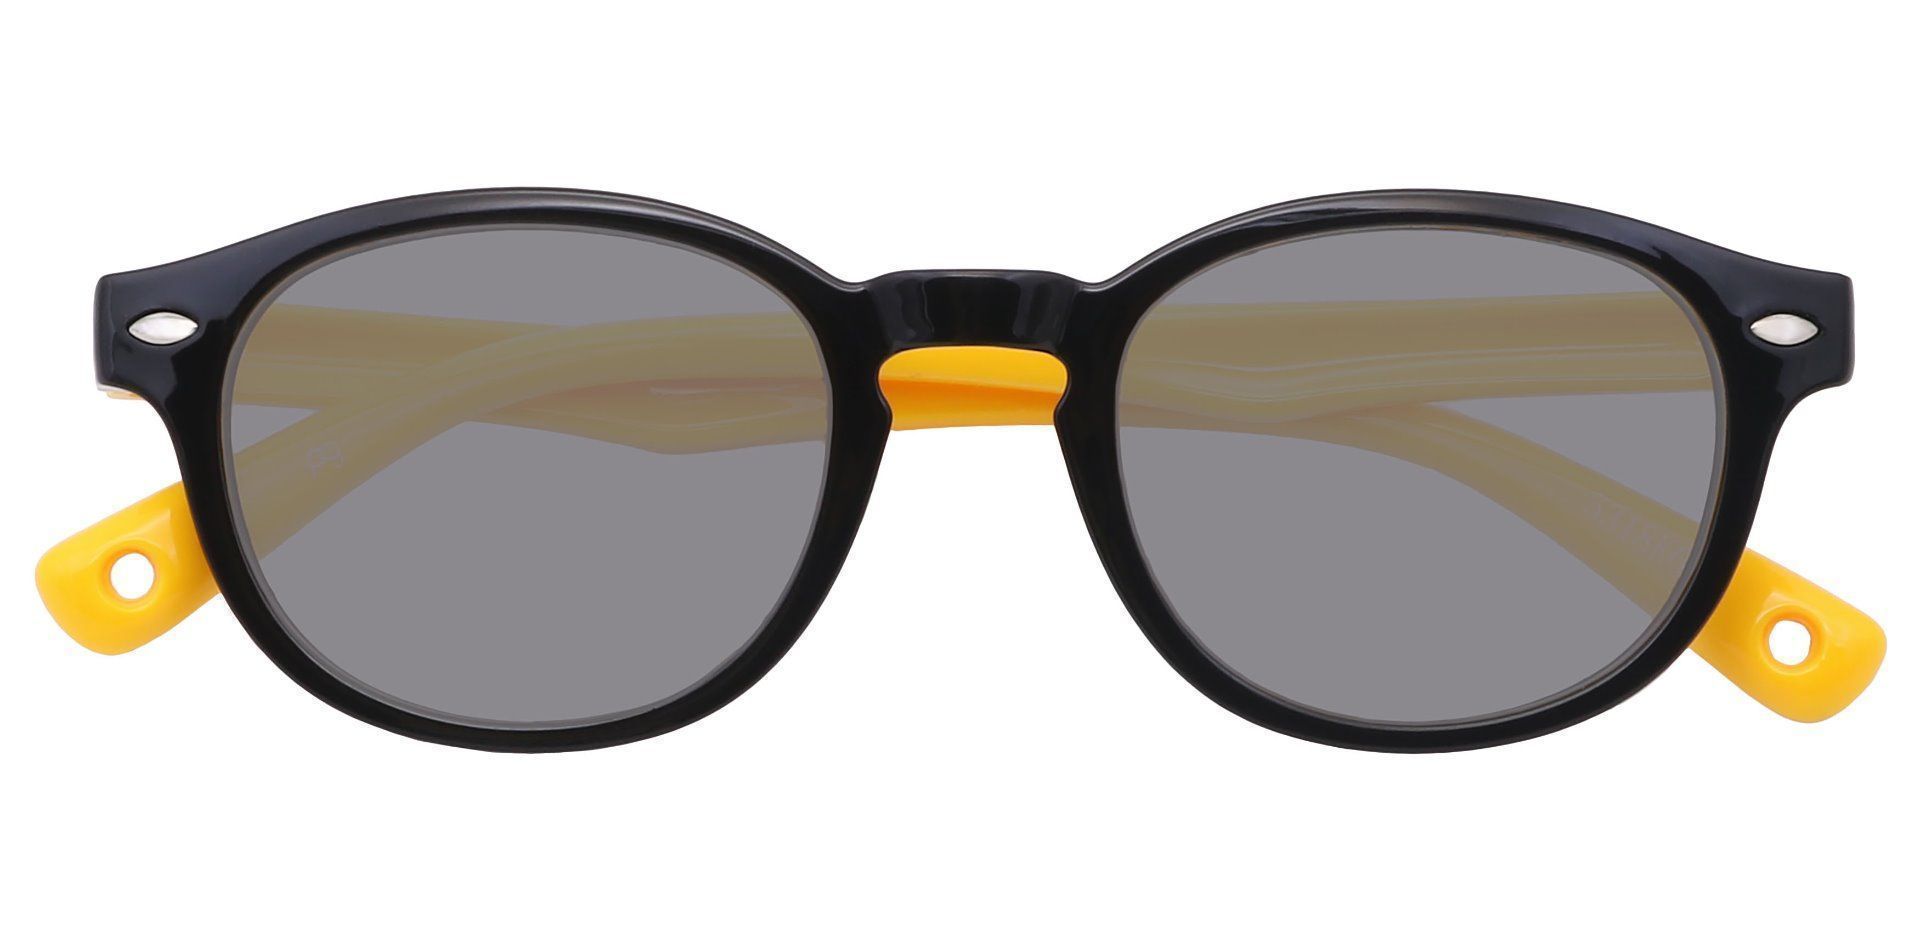 Carbon Round Black Non-Rx Sunglasses